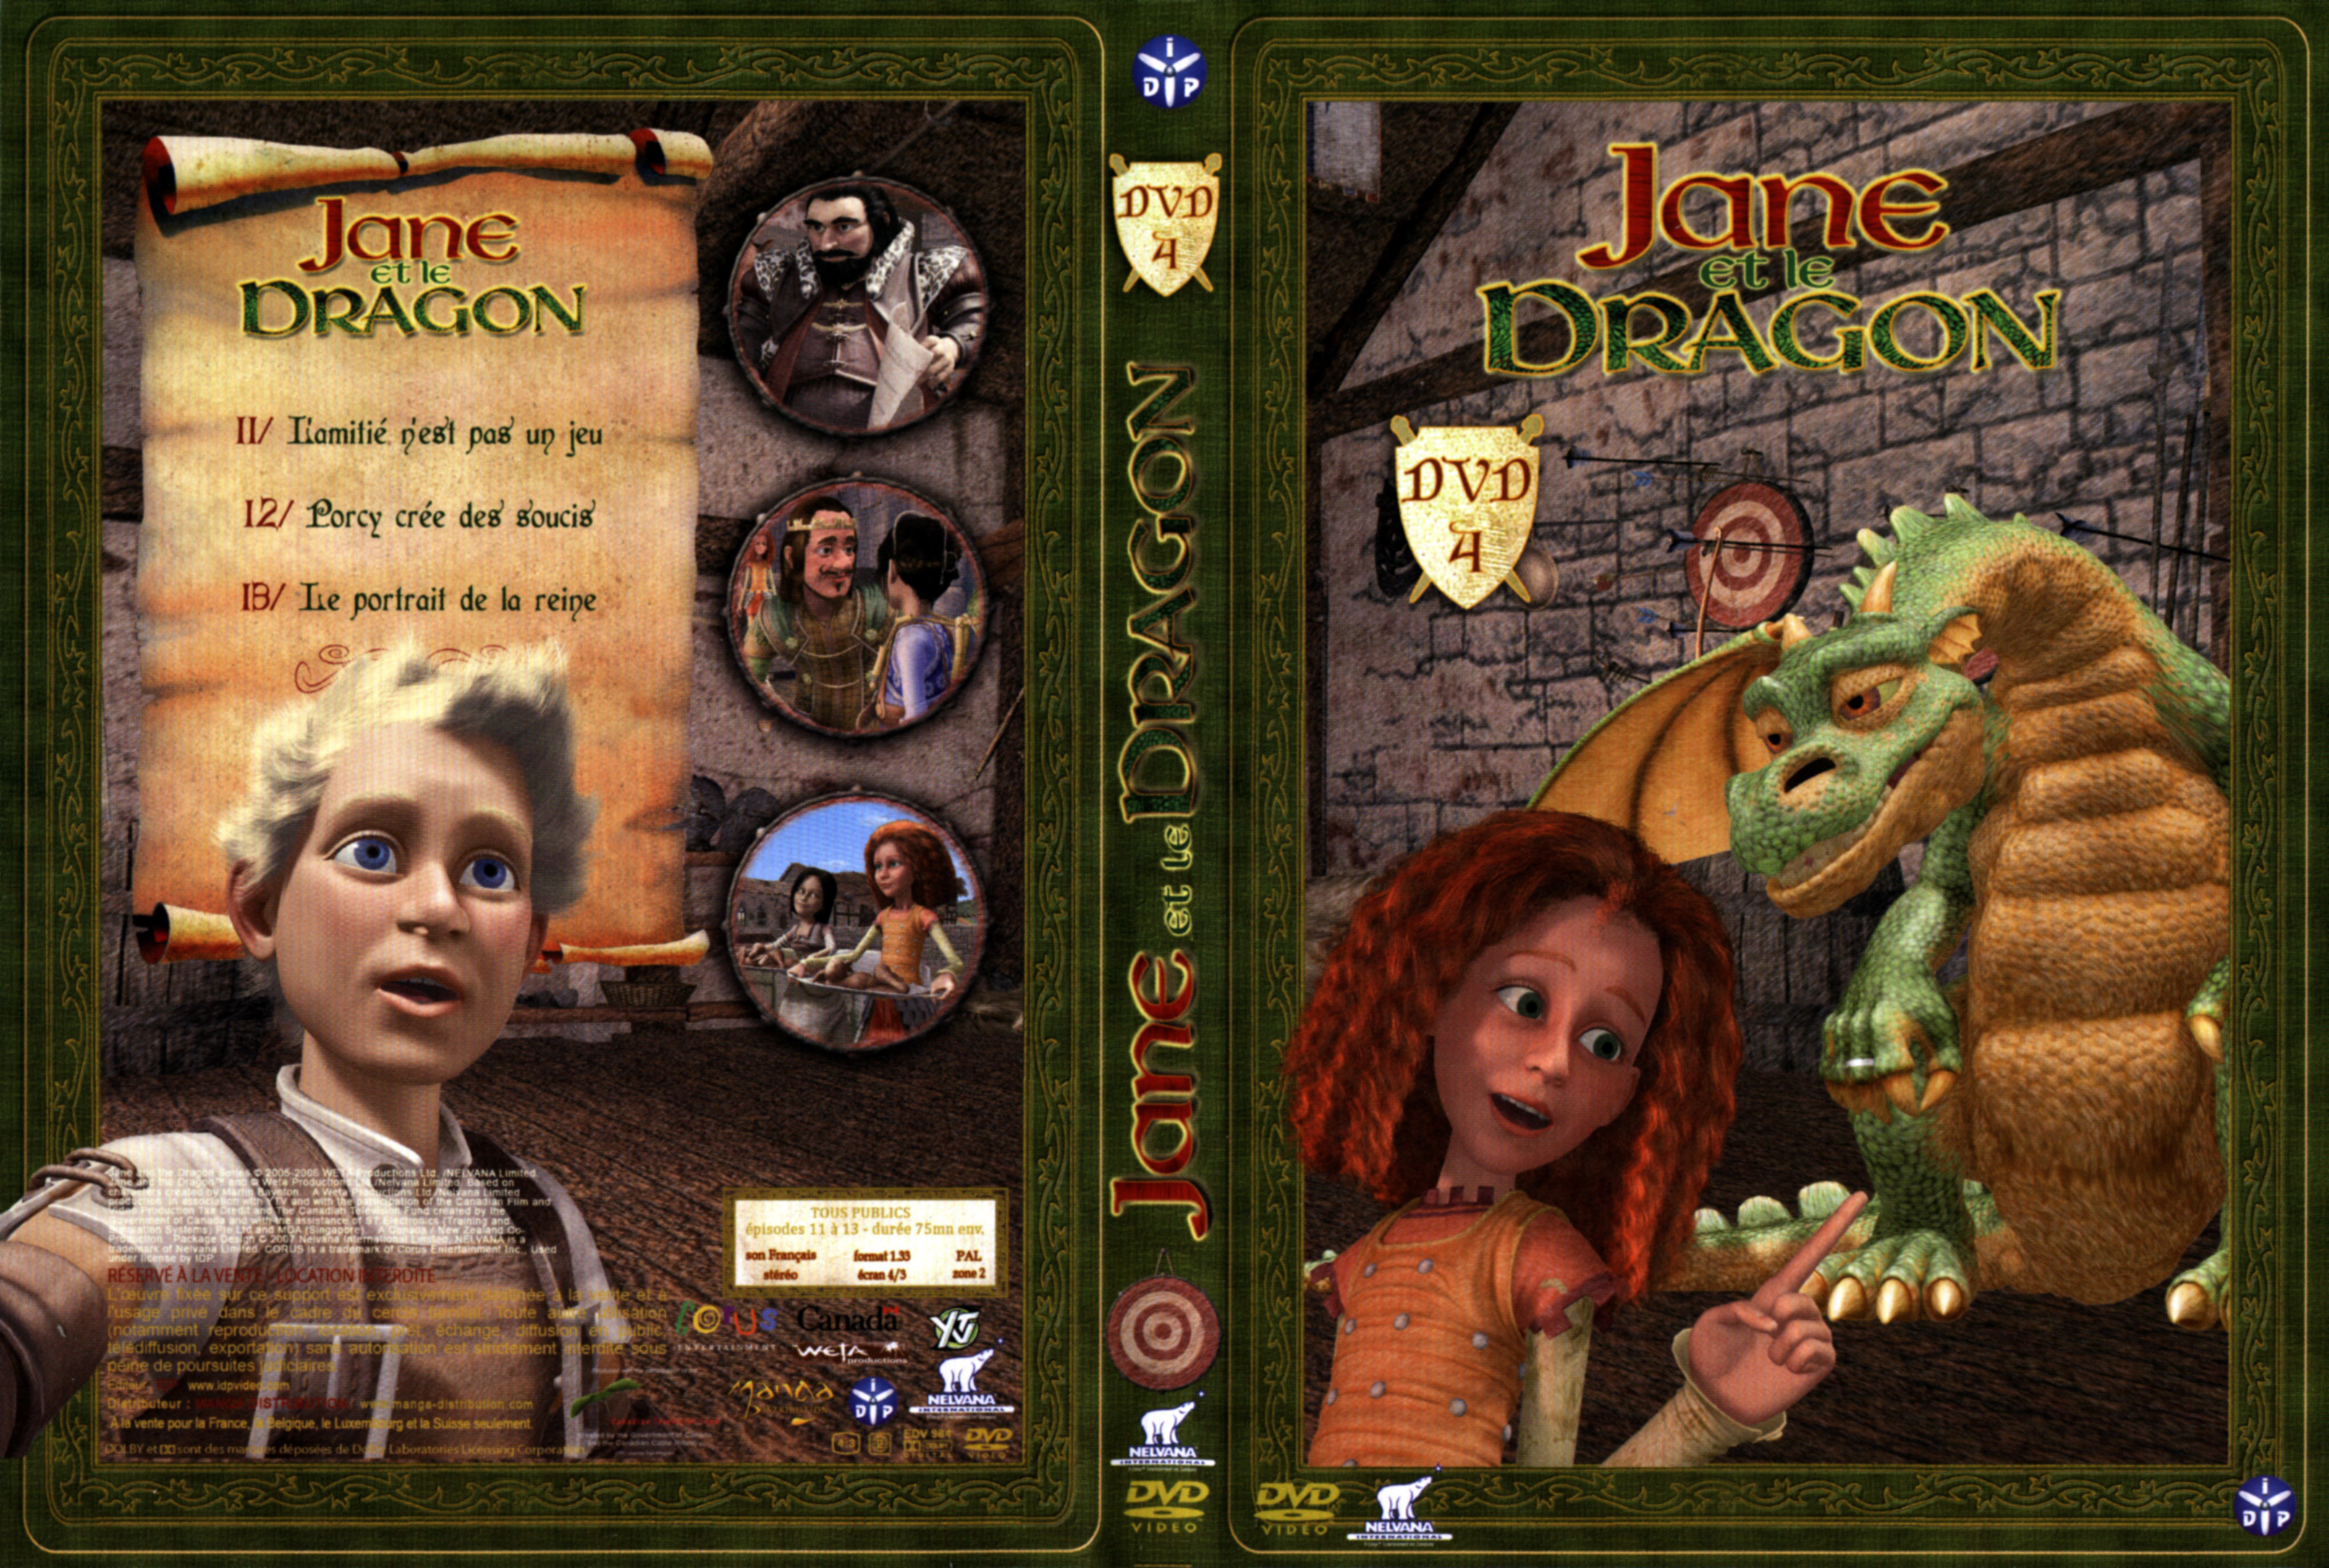 Jaquette DVD Jane et le Dragon vol 4